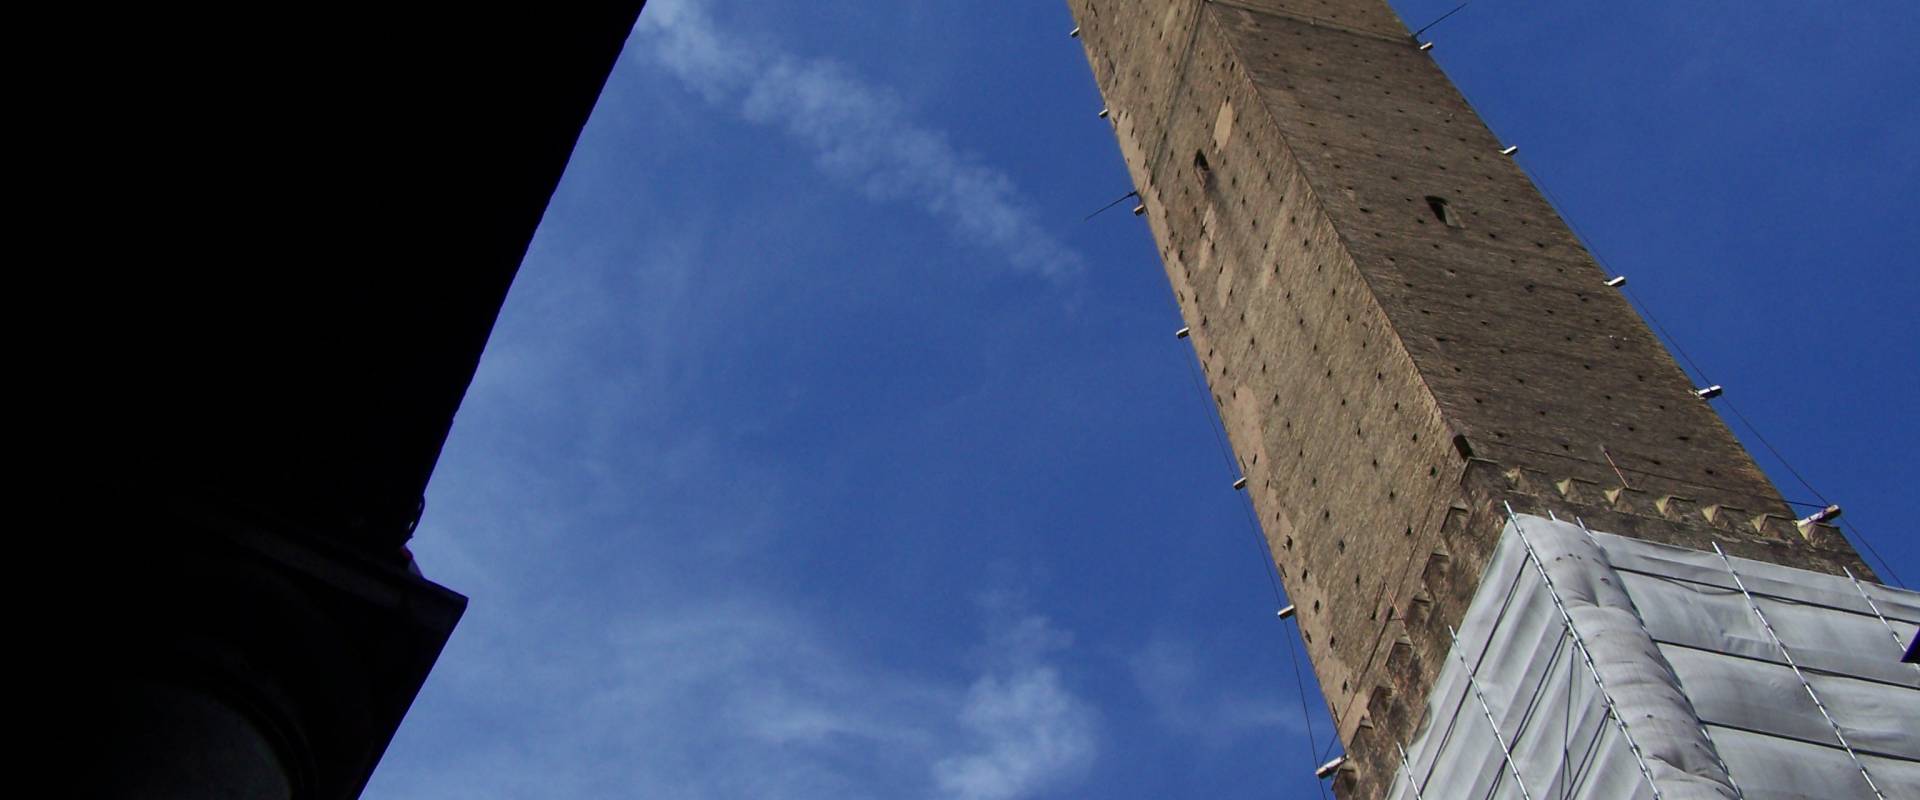 Torre asinelli bologna foto di R.montagna